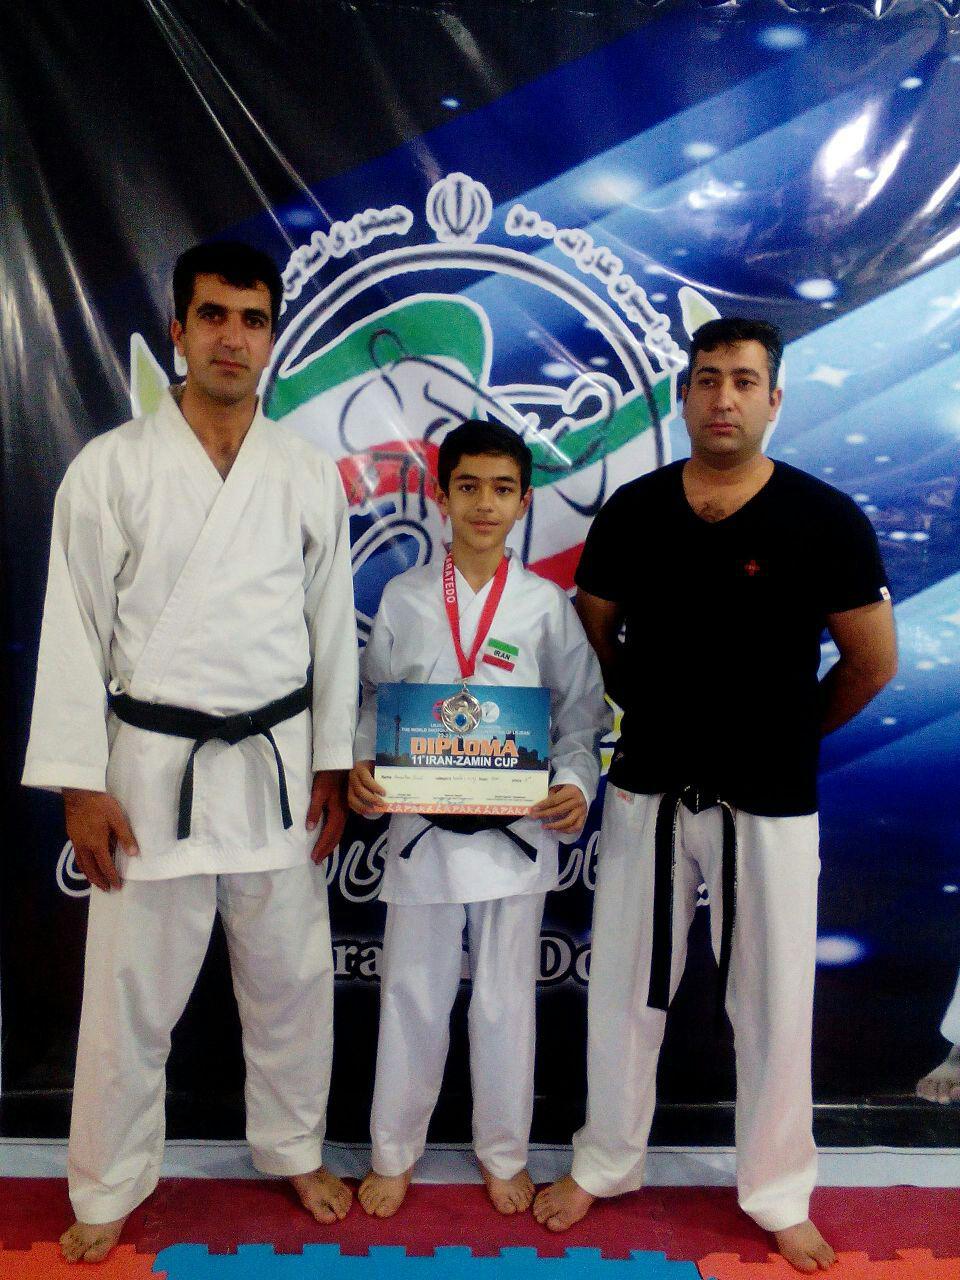 نوجوان کاراته کای رفسنجانی نایب قهرمان مسابقات کاراته بین المللی شد